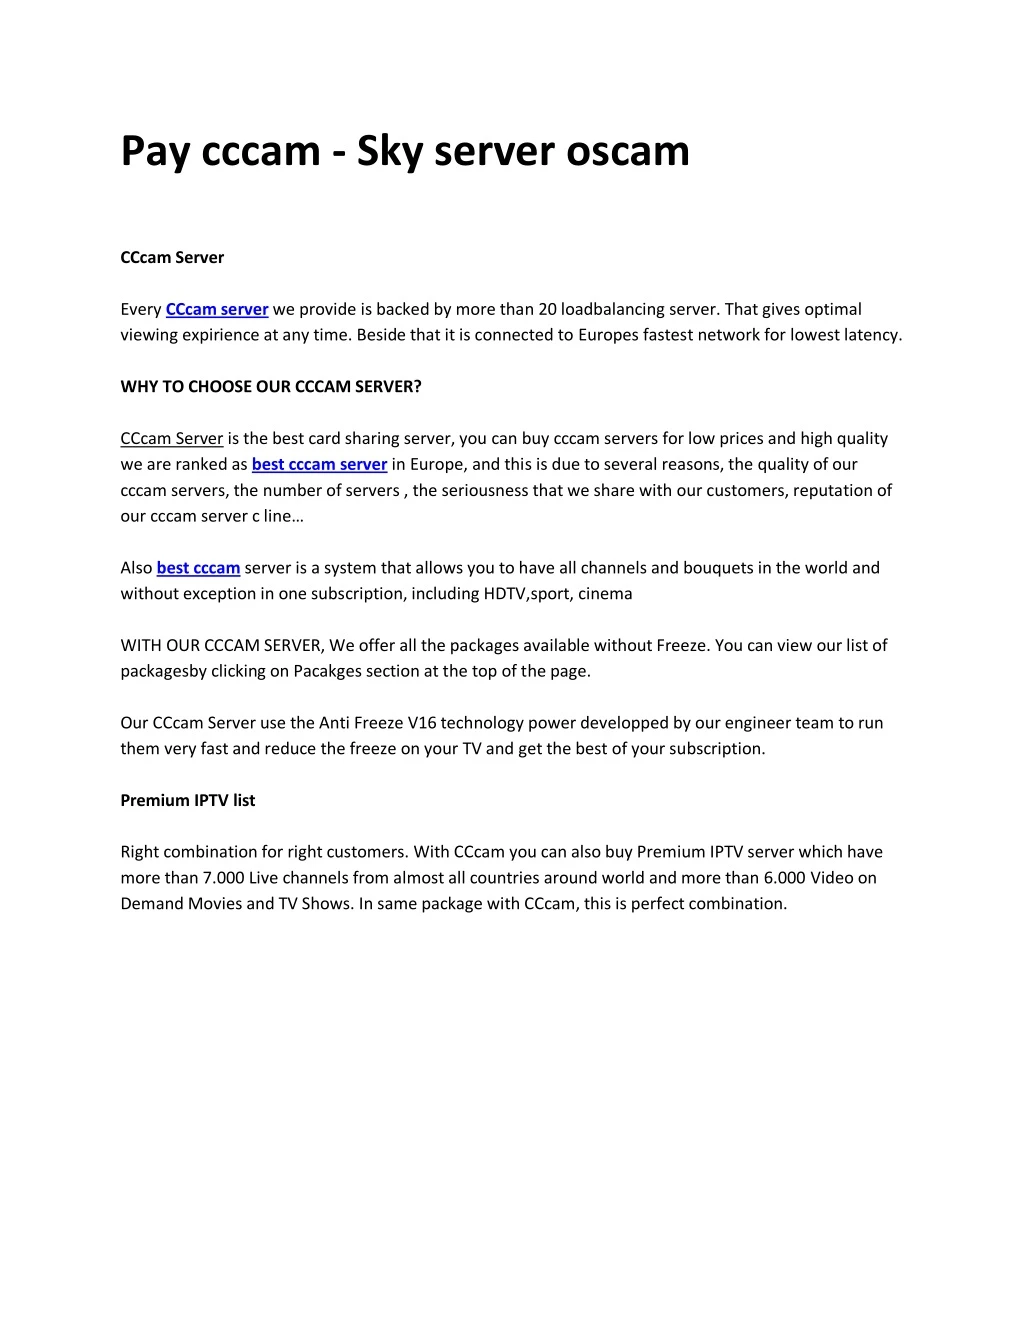 pay cccam sky server oscam